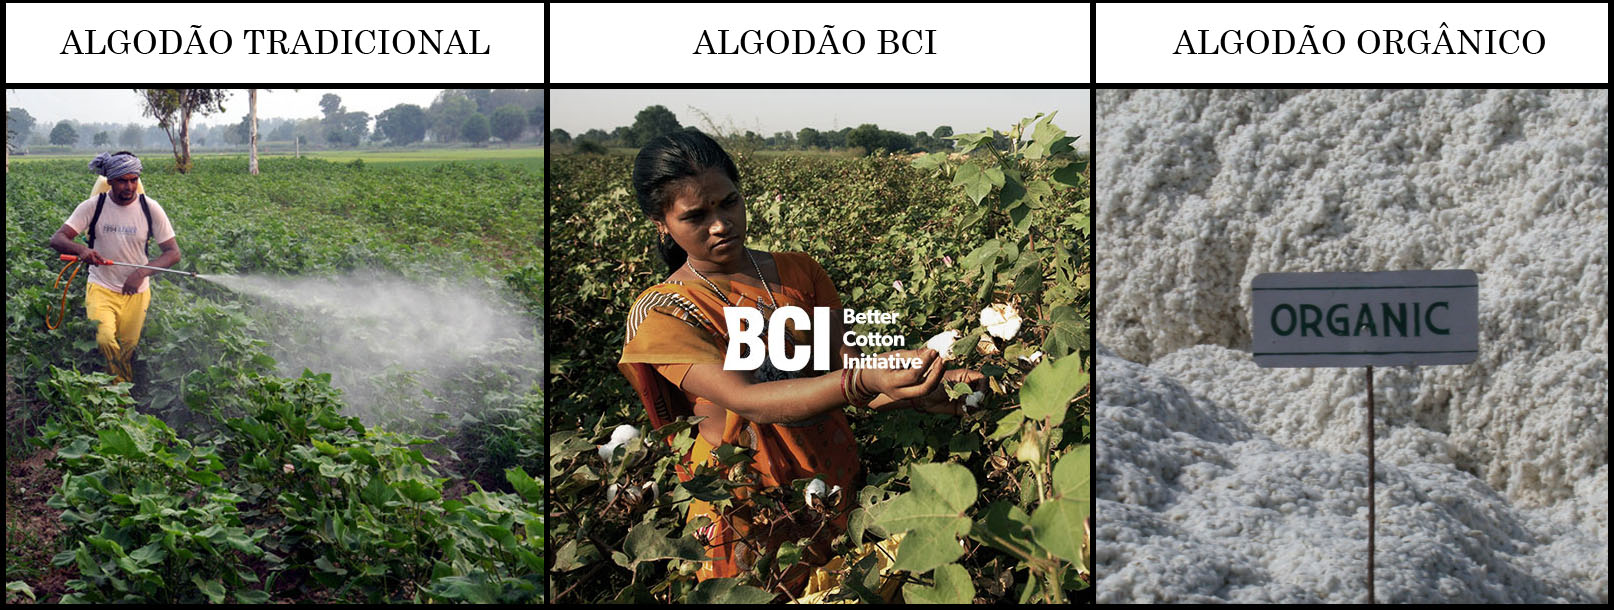 Monsanto perde milhões na Índia pois agricultores estão plantando algodão orgânico stylo urbano-1